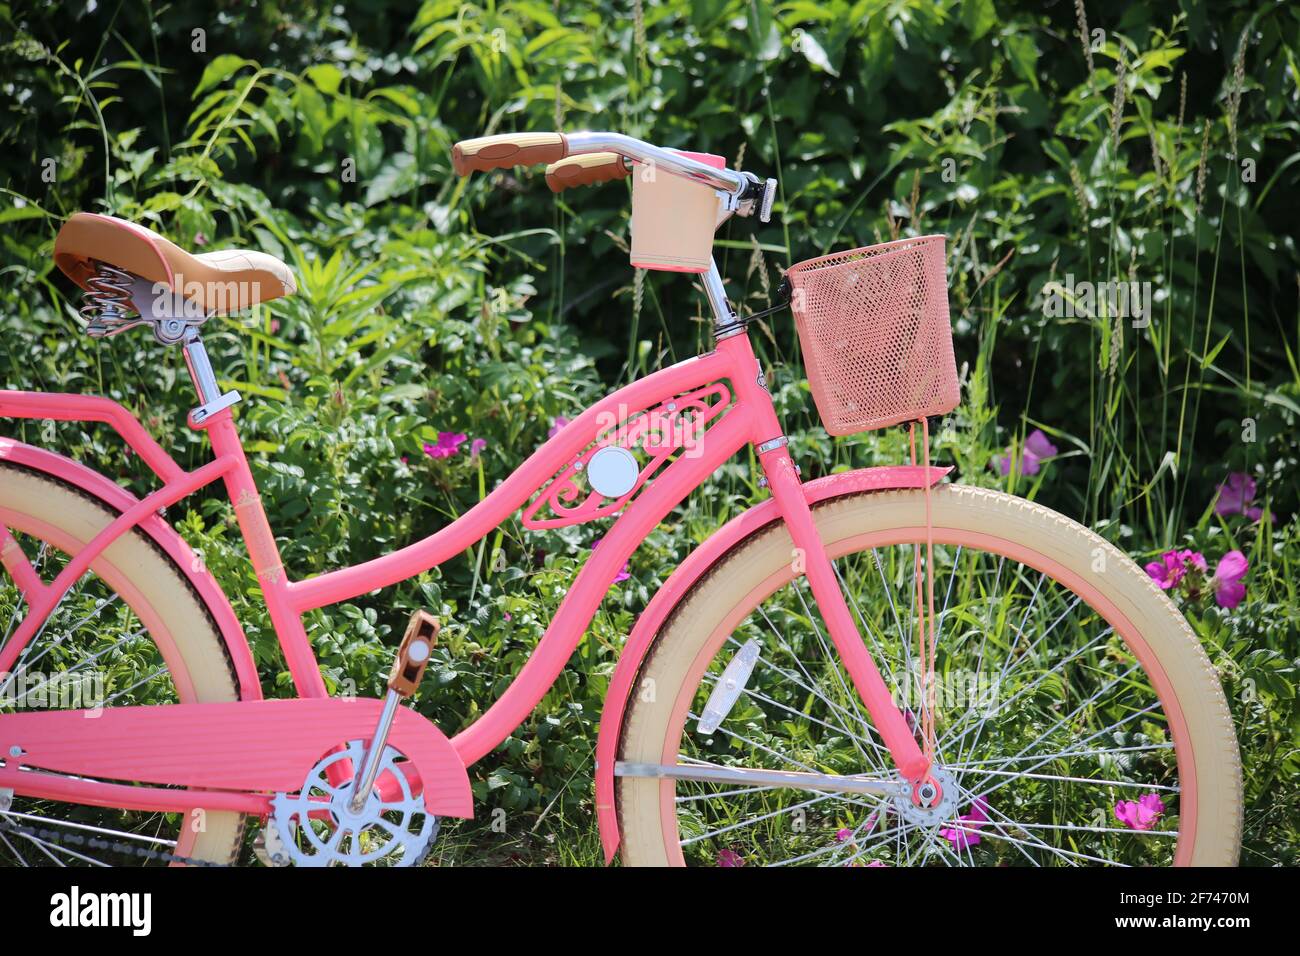 Special Edition pink retro style Freizeit Touring Mountainbike für  Erwachsene Frauen mit Reise Korb im Sommer, Bewegung, Stil, Spaß, Sommer  Stockfotografie - Alamy